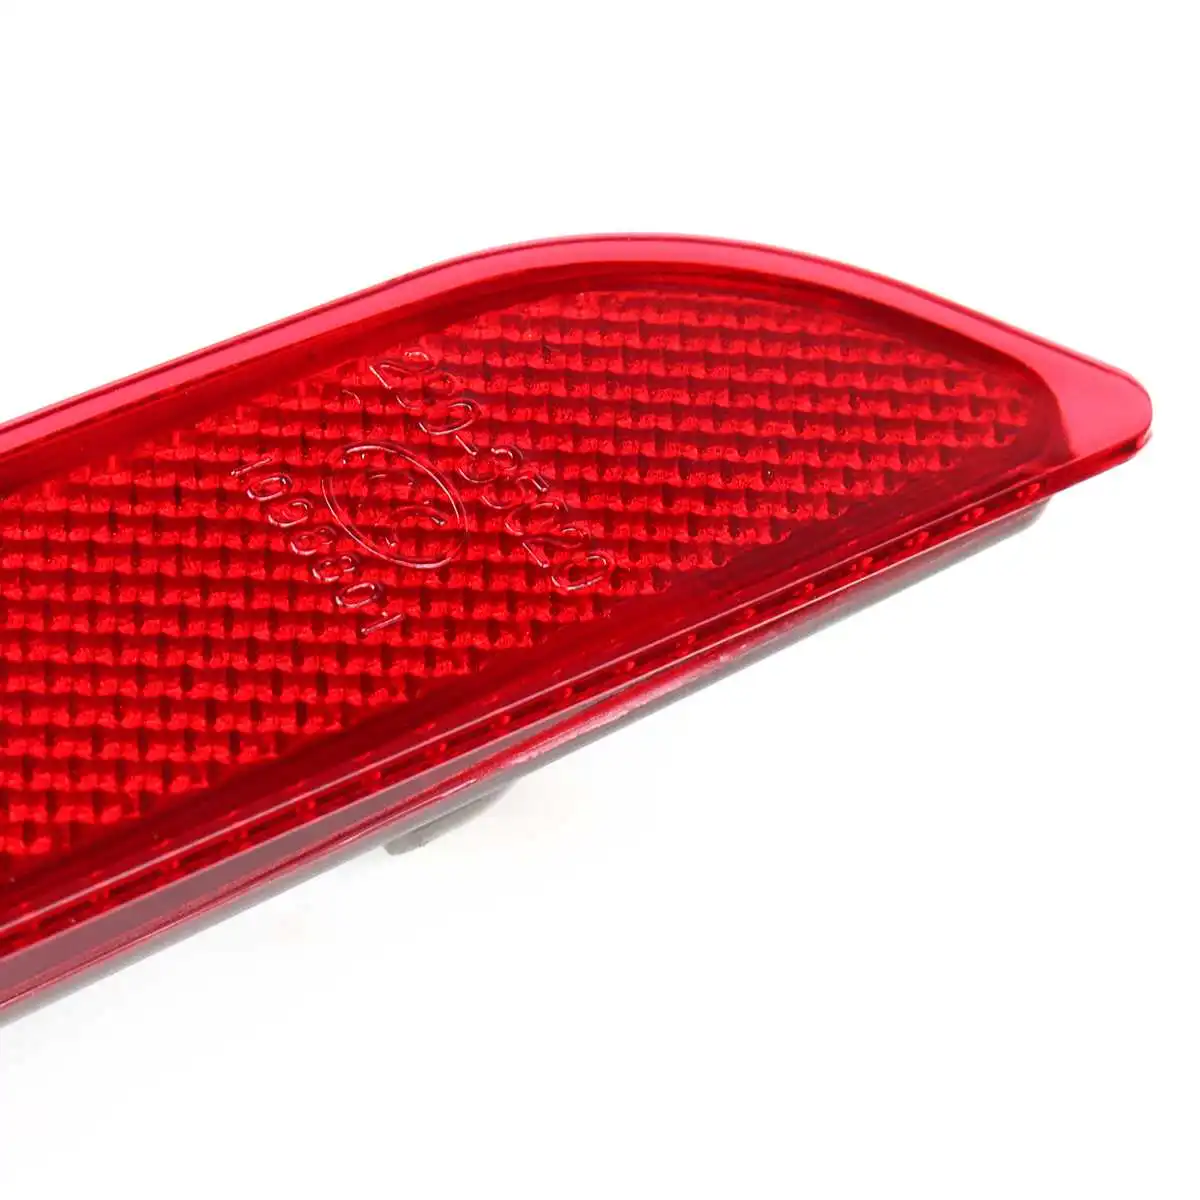 Автомобильный задний бампер отражатель Светоотражающая полоса Предупреждение ющий противотуманный светильник лампа для Mazda 3 M3 седан хэтчбек 2011 2012